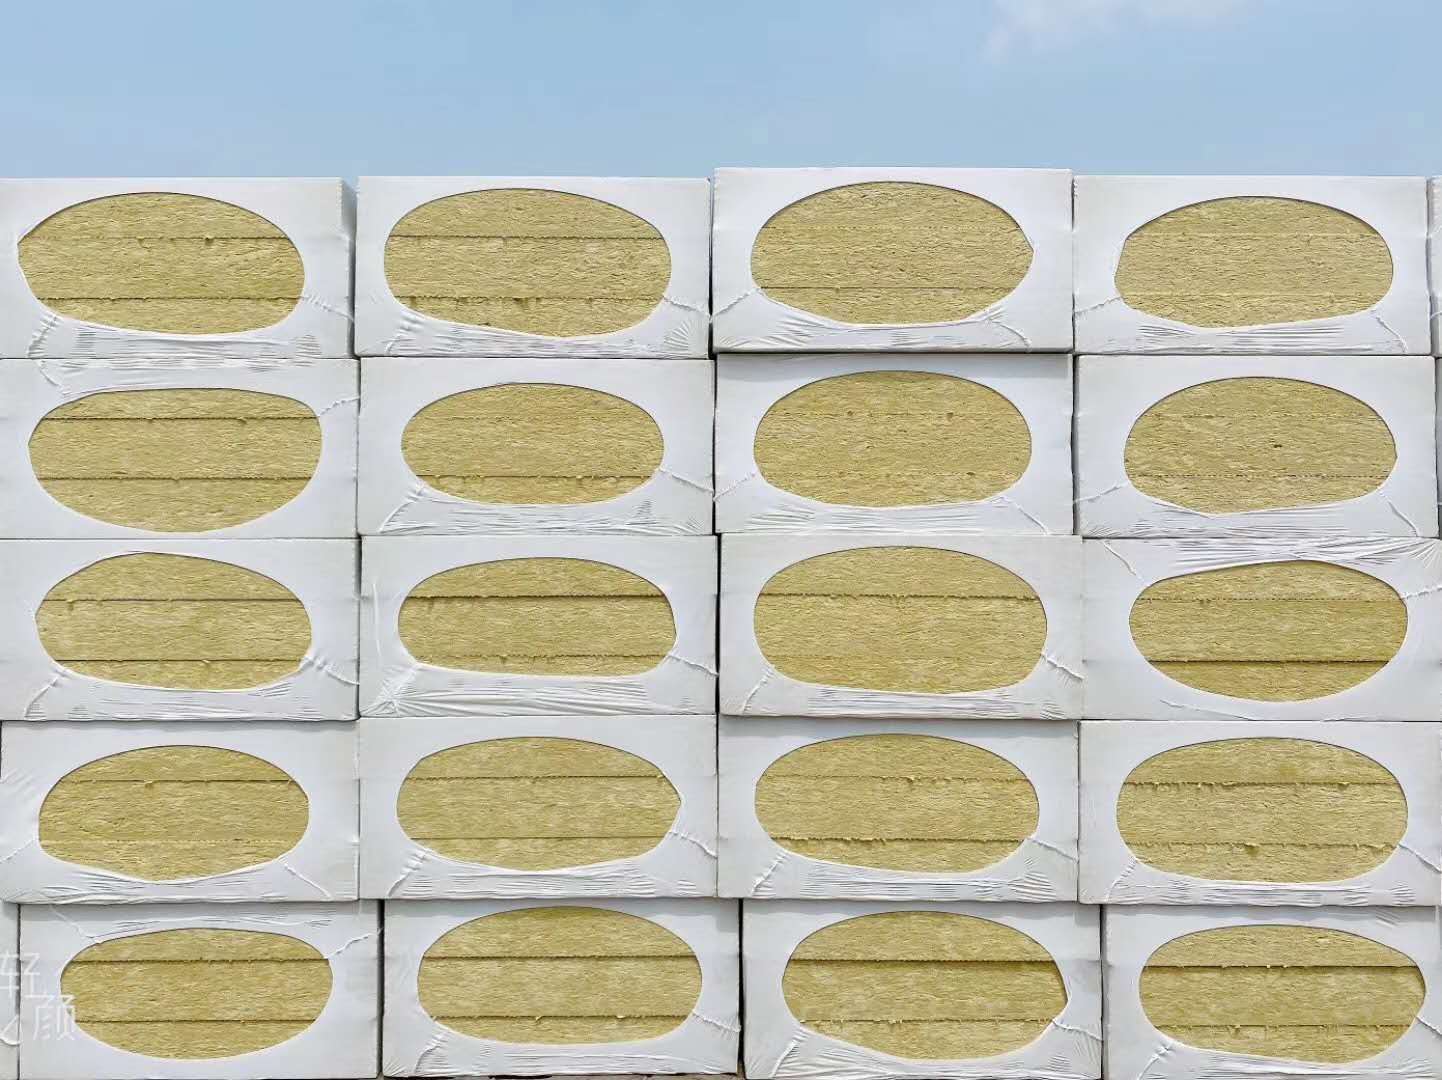   南宫NG28相信品牌的力量网址岩棉板为何能迅速占领中原岩棉板市场